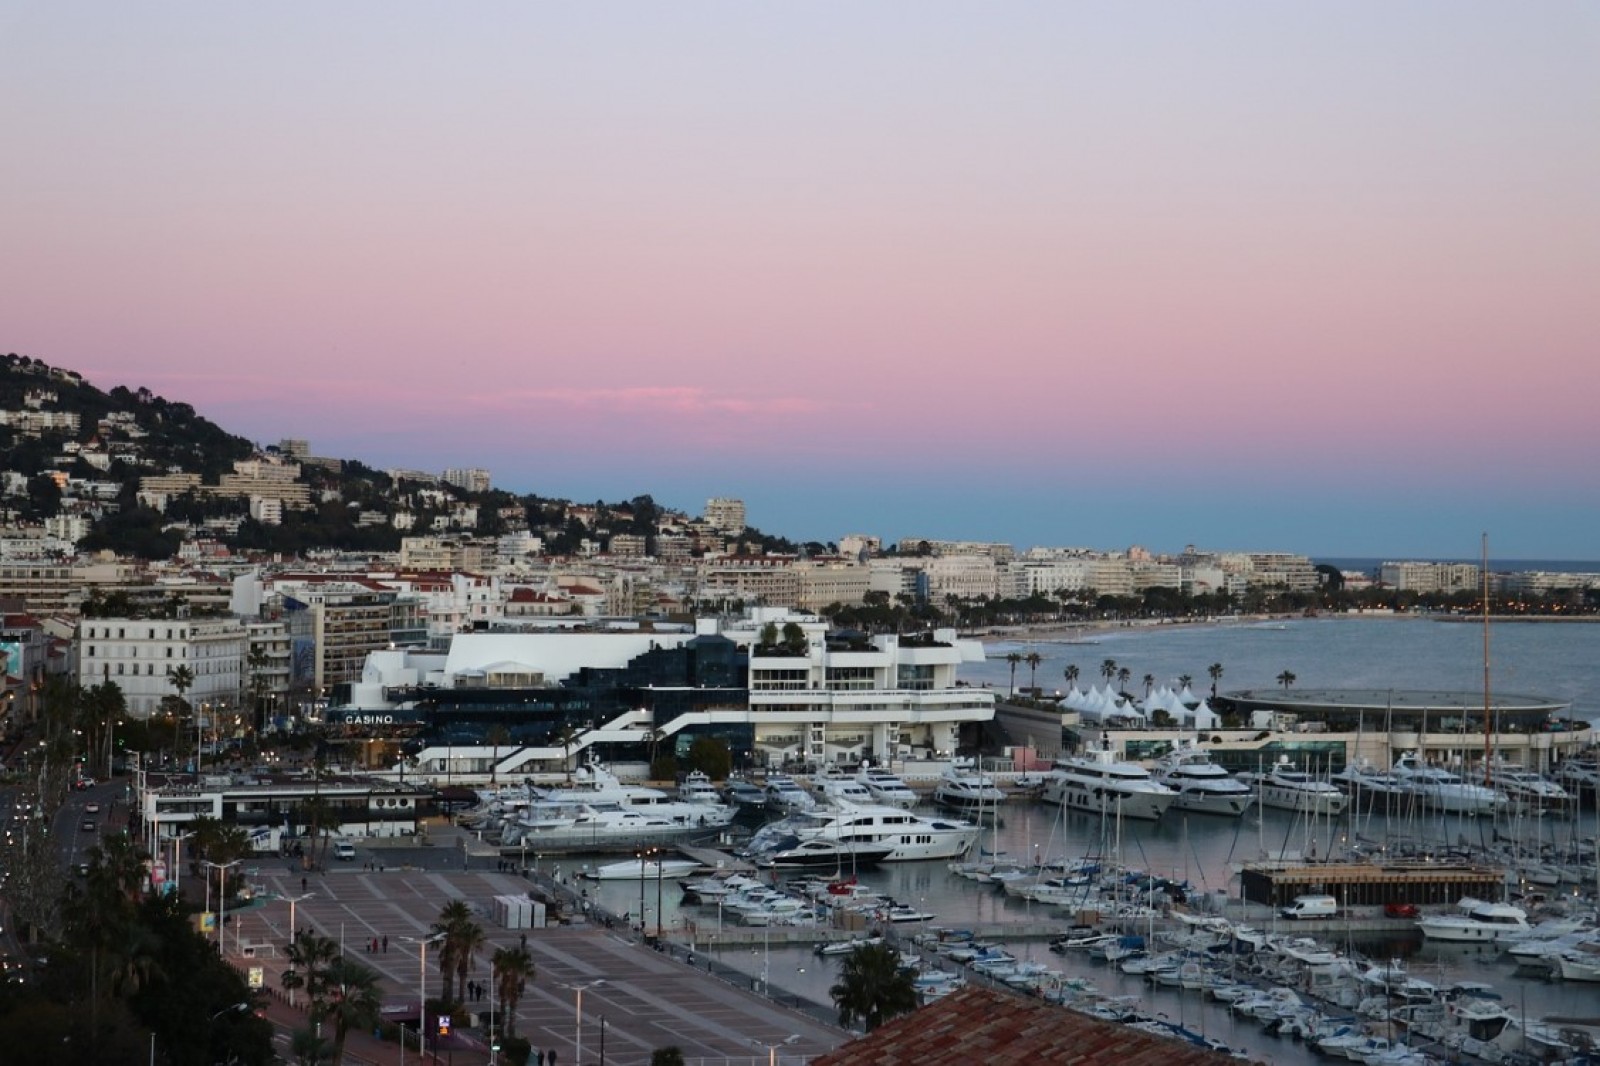 Chauffeur Privé & Hotel Majestic à Cannes – 24/7 – Transfert Aéroport jusqu’à l’Hôtel Majestic à Cannes - Ruby Services 